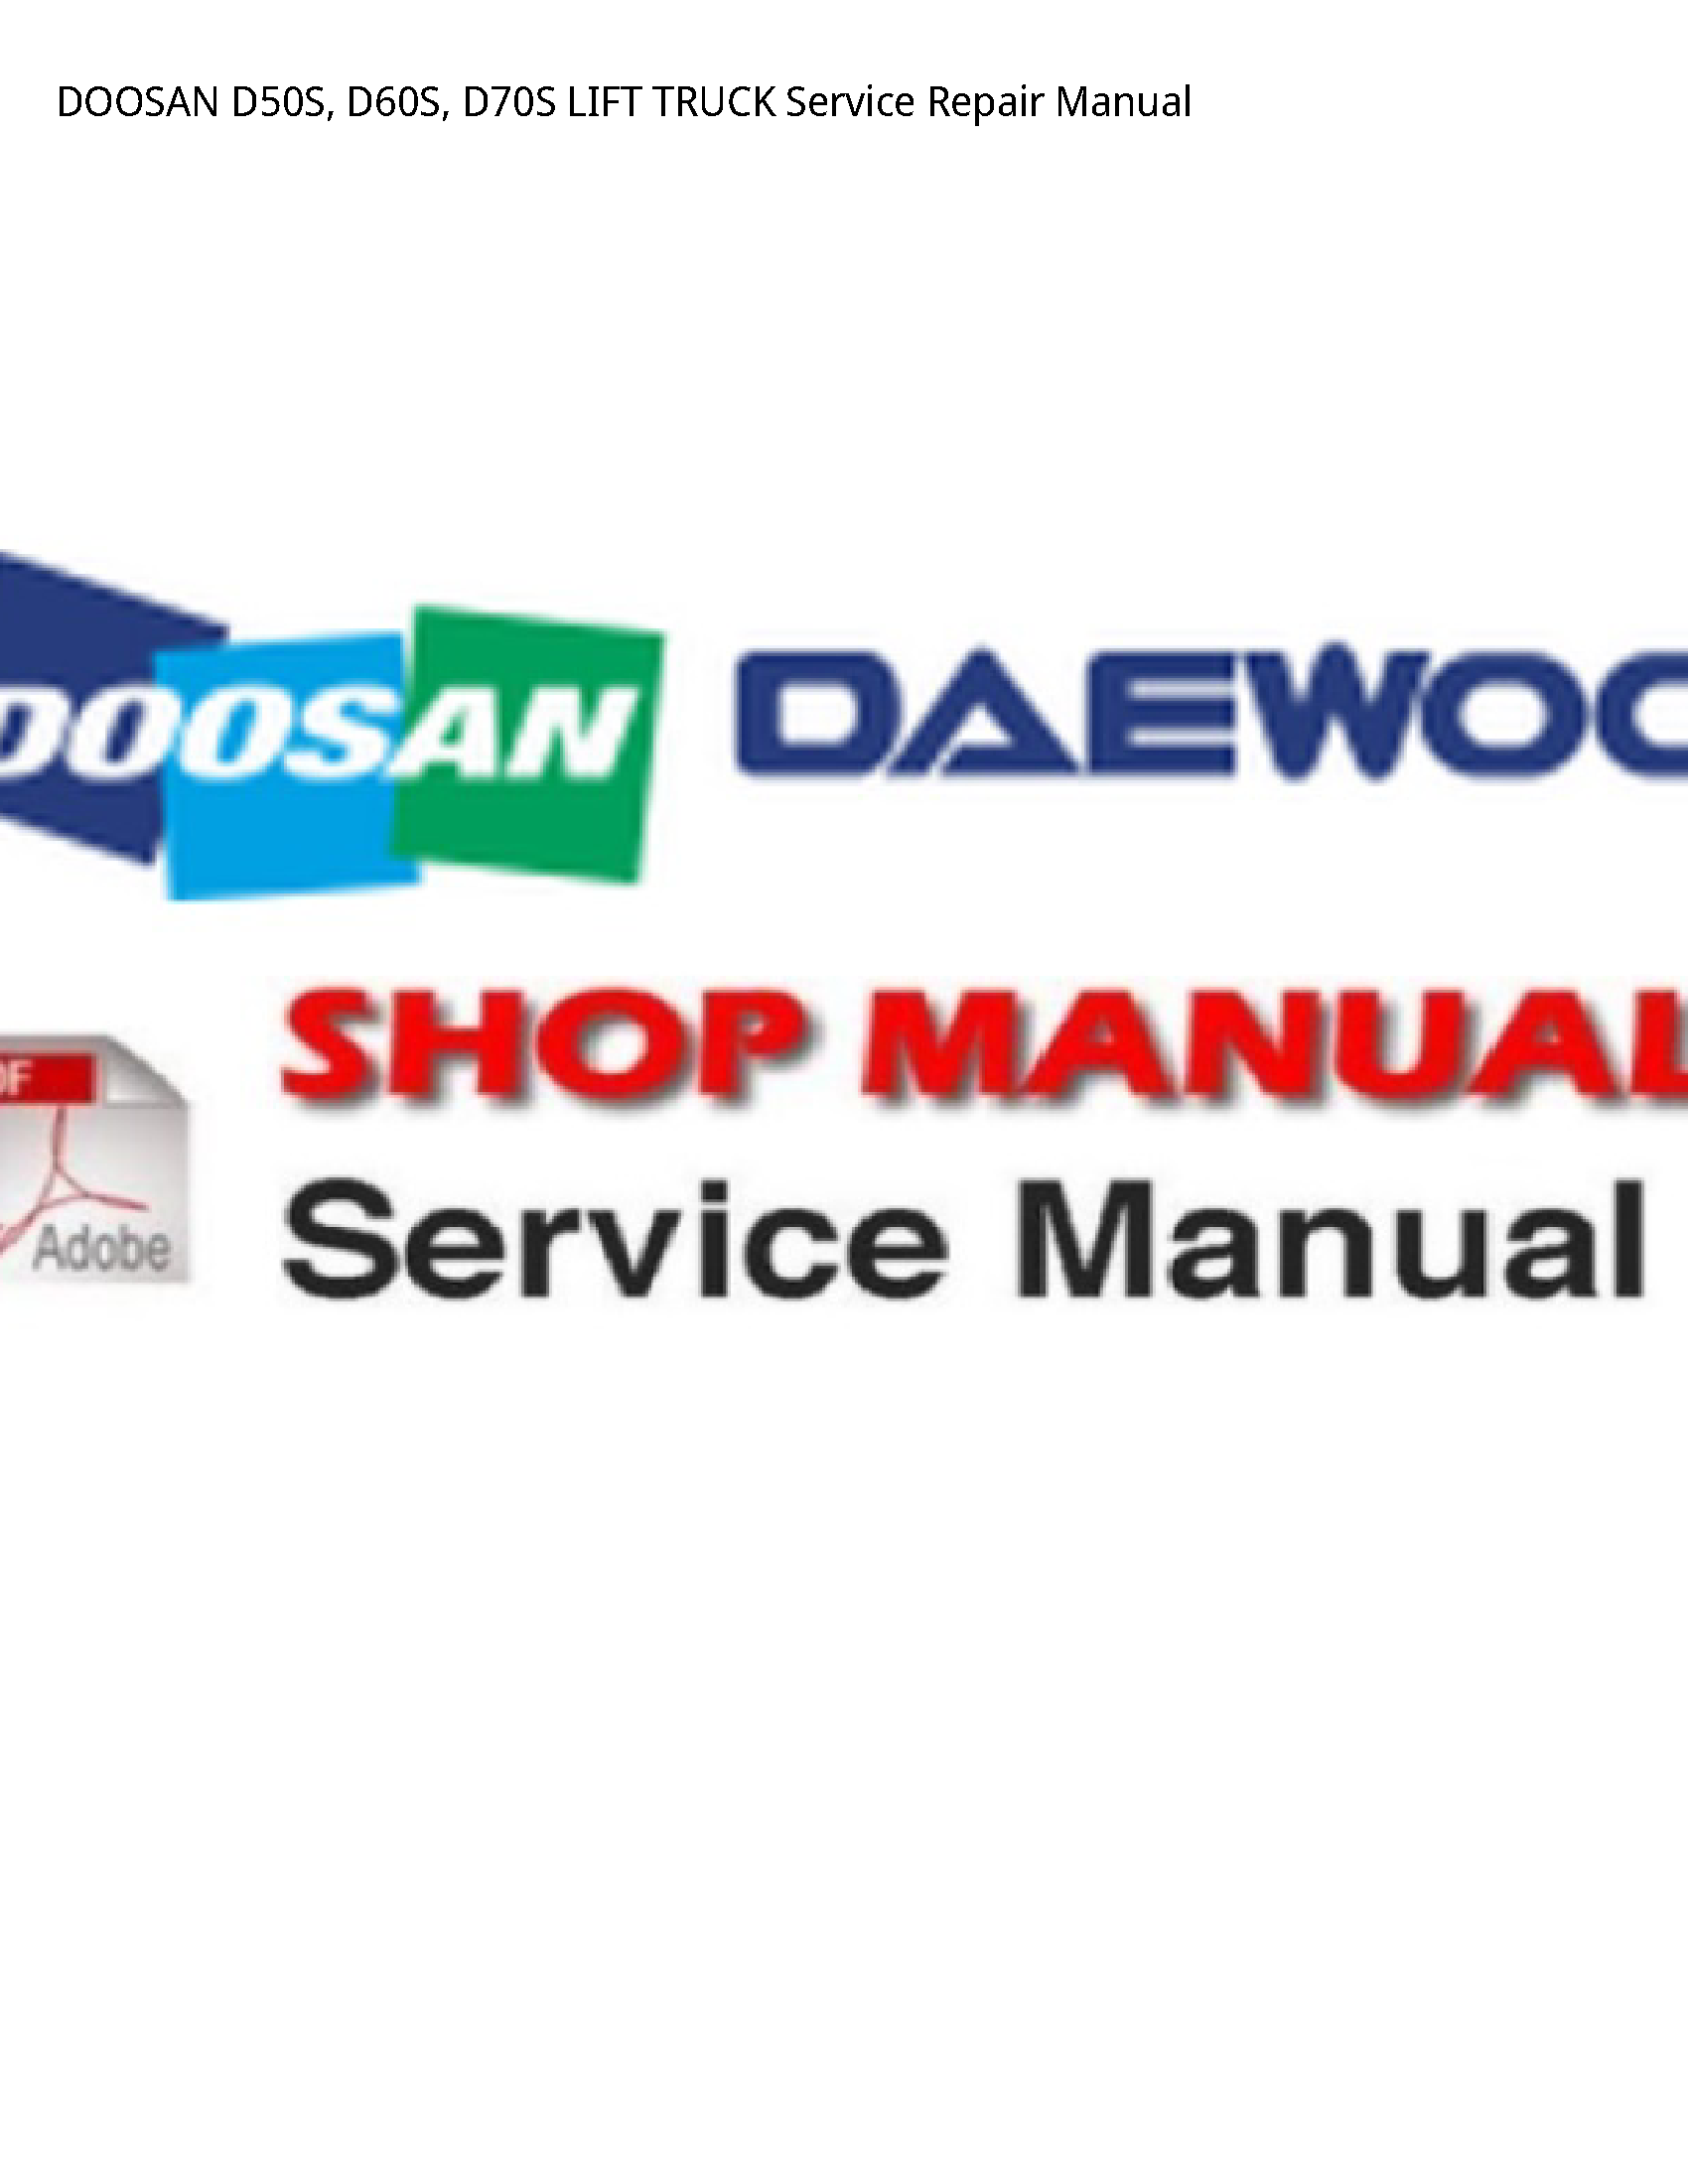 Doosan D50S LIFT TRUCK manual